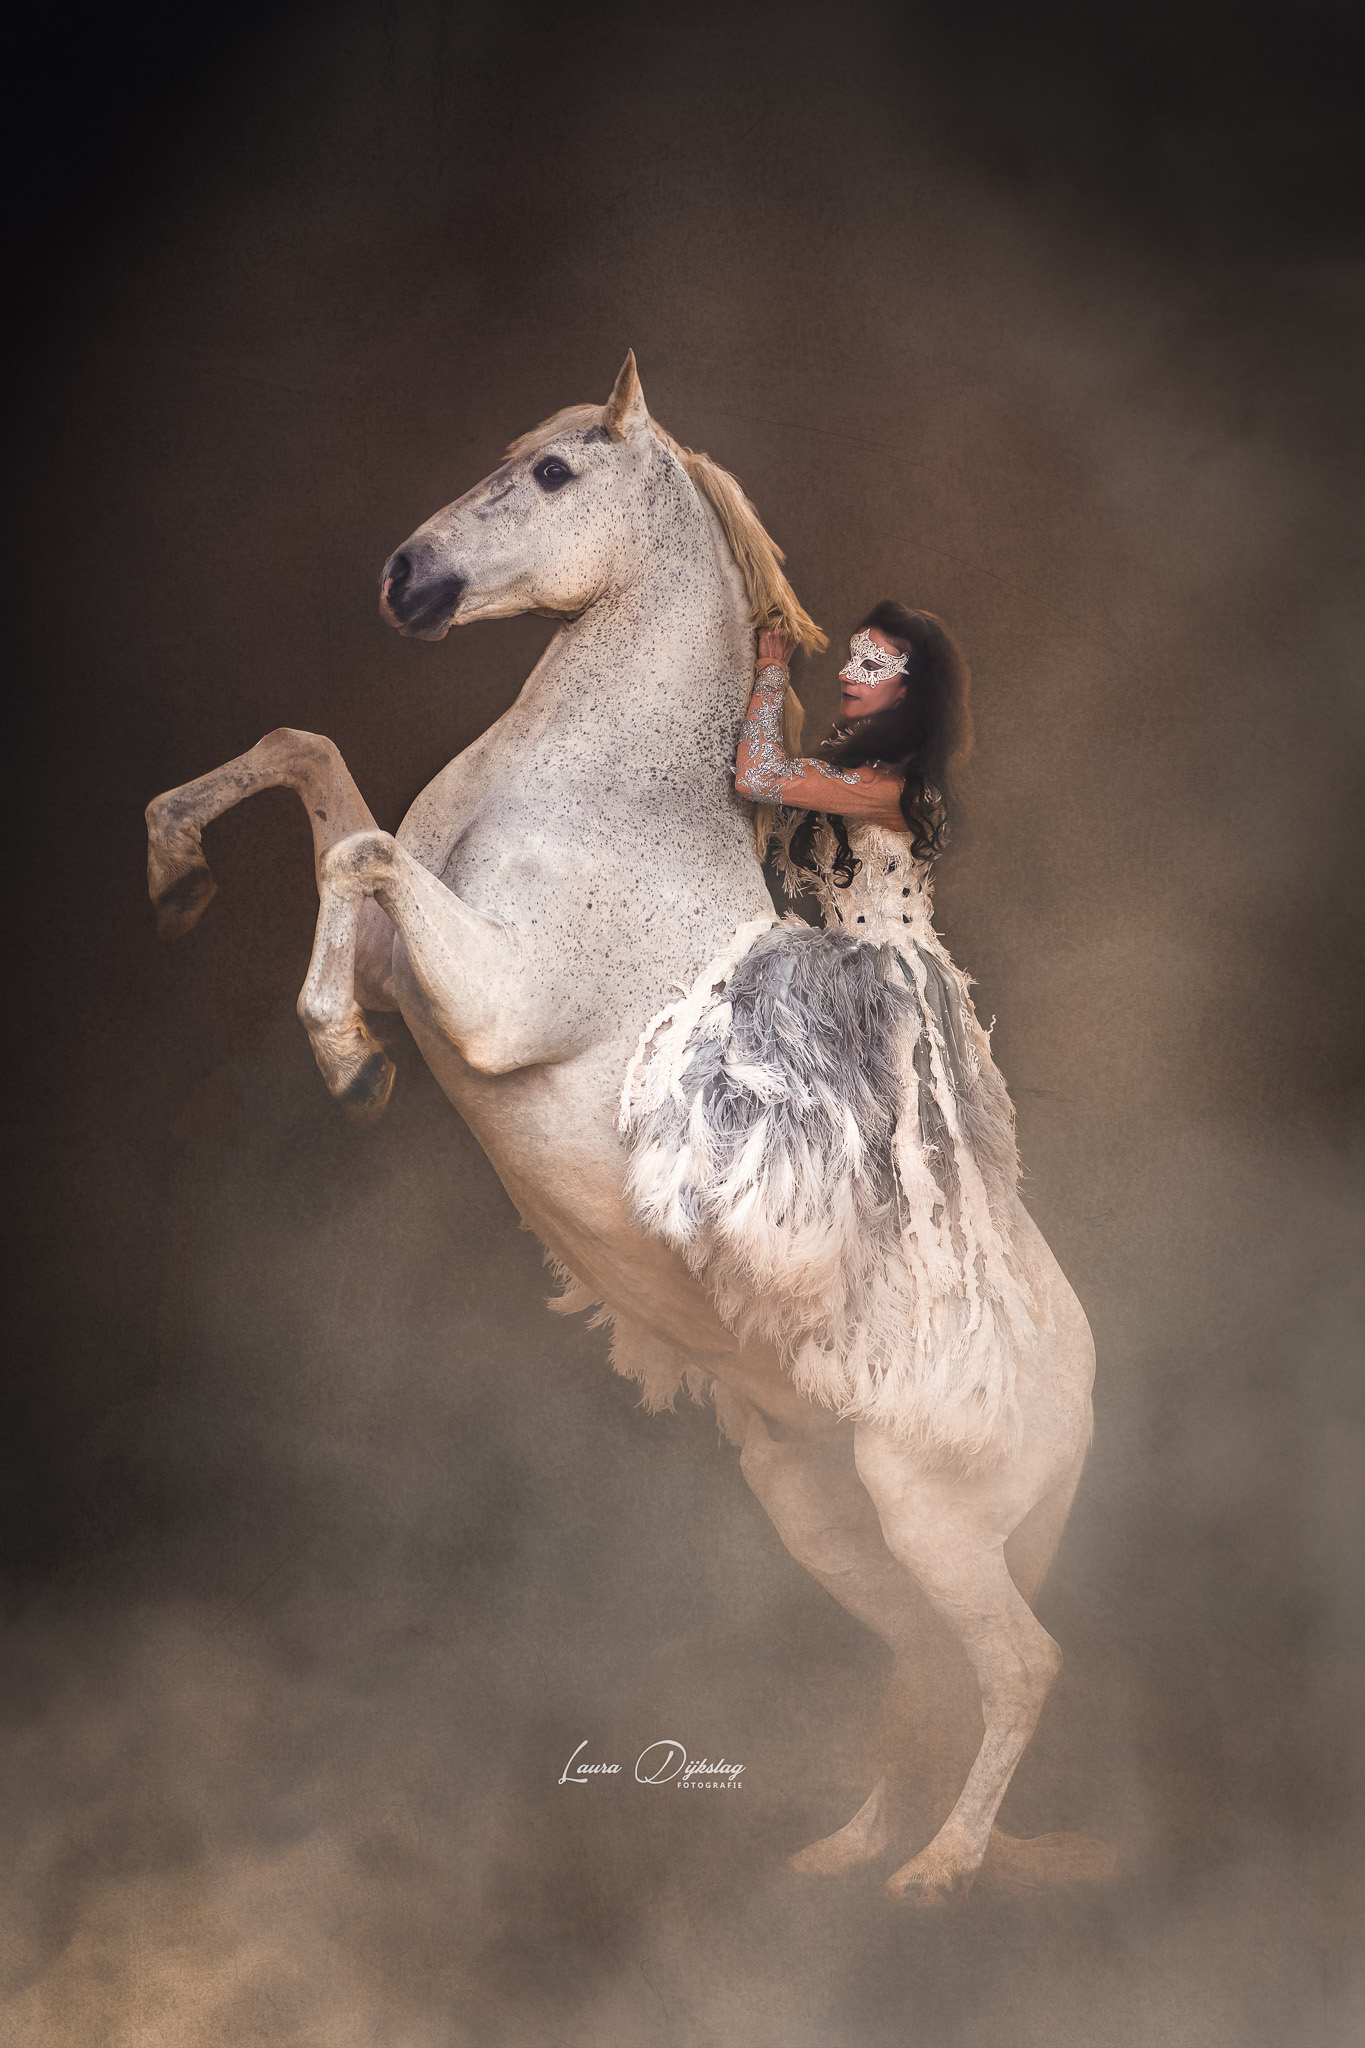 laura dijkslag fotografie heerde zwolle apeldoorn wit paard fantasy themashoot